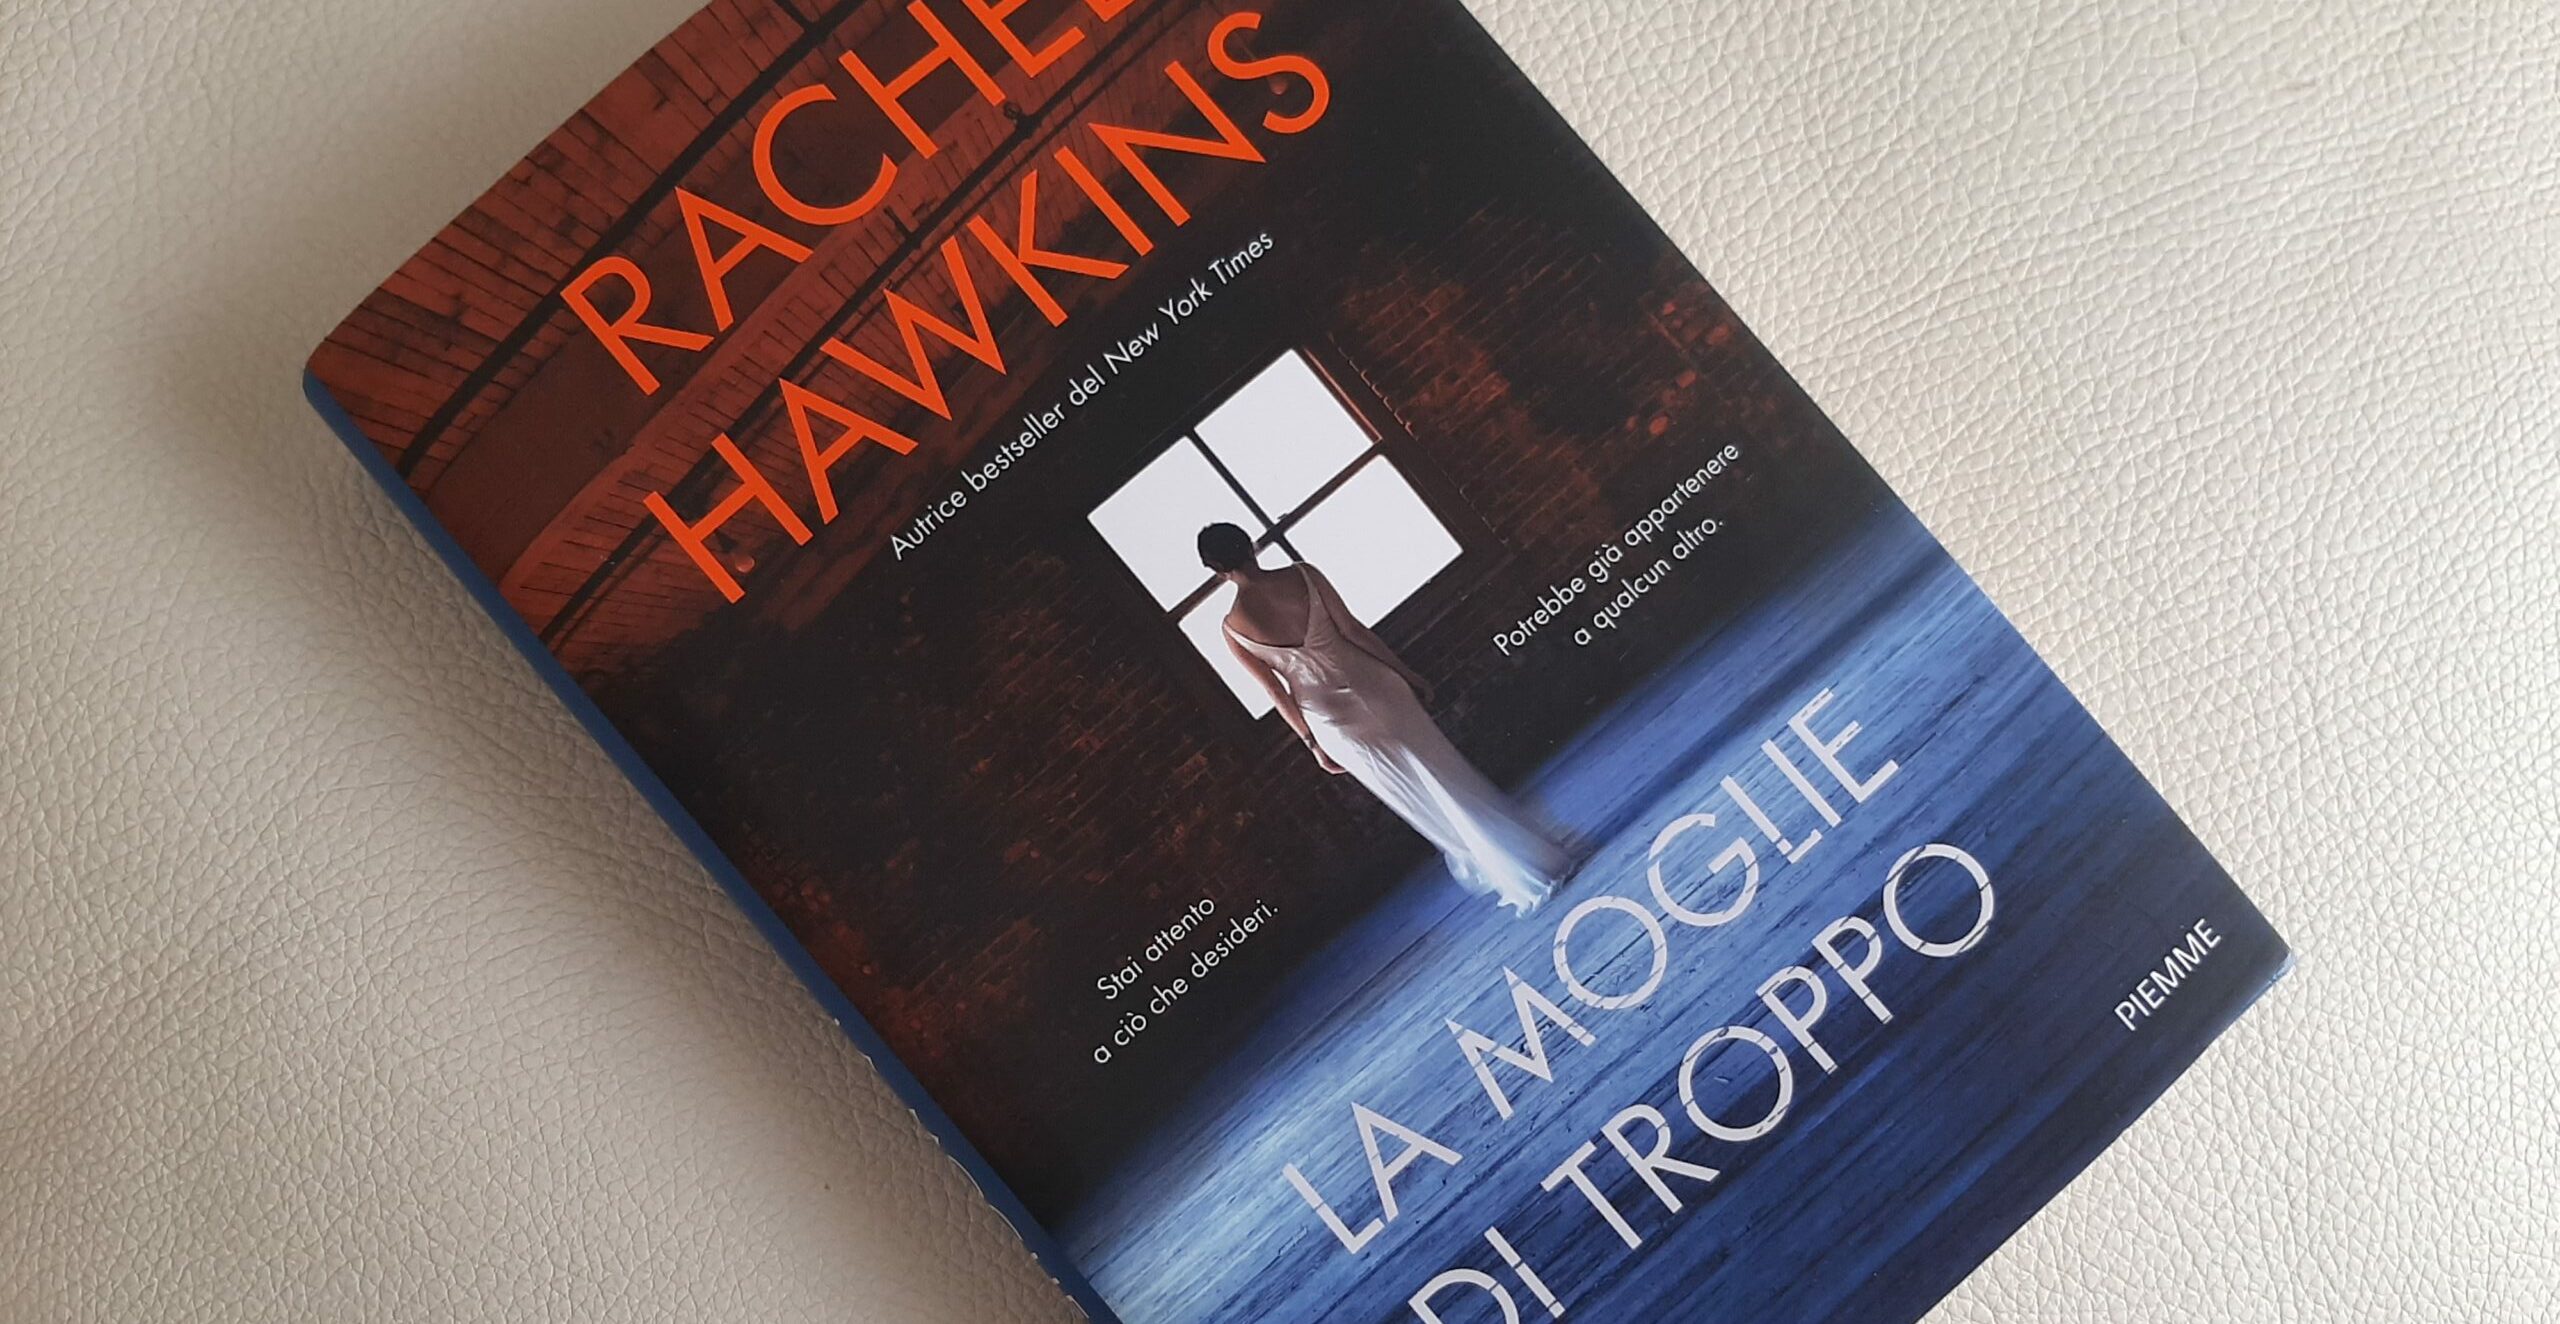 “La moglie di troppo”, gli echi dei grandi classici nel thriller di Rachel Hawkins